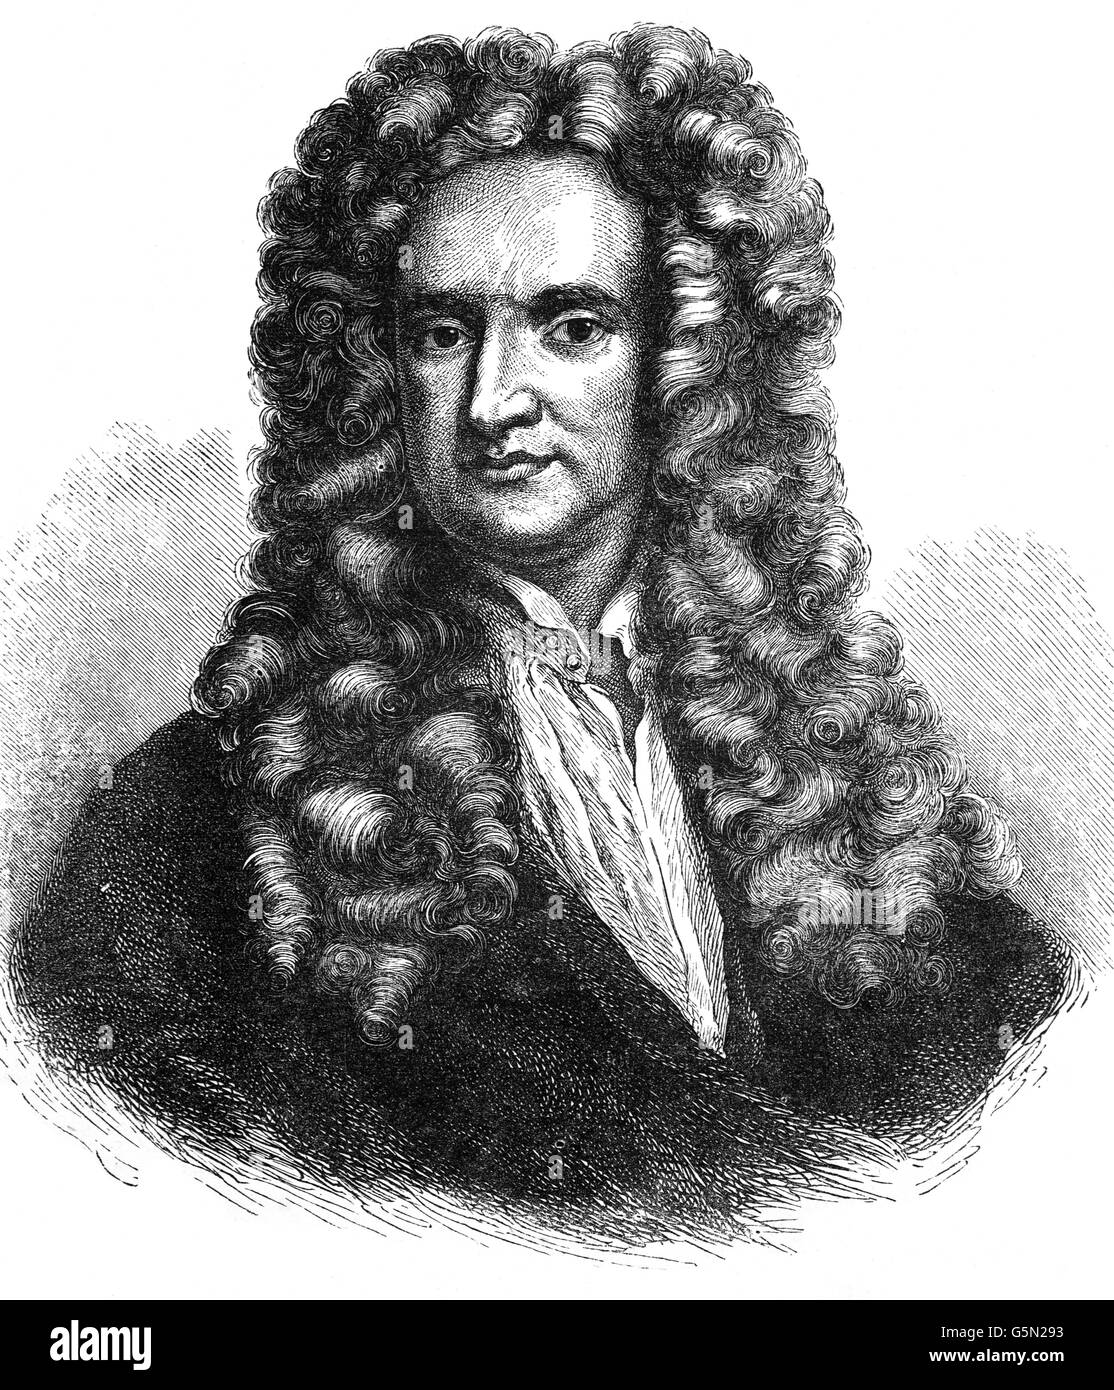 Sir Isaac Newton (1642-1726-7) war ein englischer Physiker und Mathematiker (beschrieben in seiner eigenen Zeit als "natürlicher Philosoph"), der als einer der einflussreichsten Wissenschaftler aller Zeiten und eine Schlüsselfigur in der wissenschaftlichen Revolution weitgehend anerkannt ist. Stockfoto